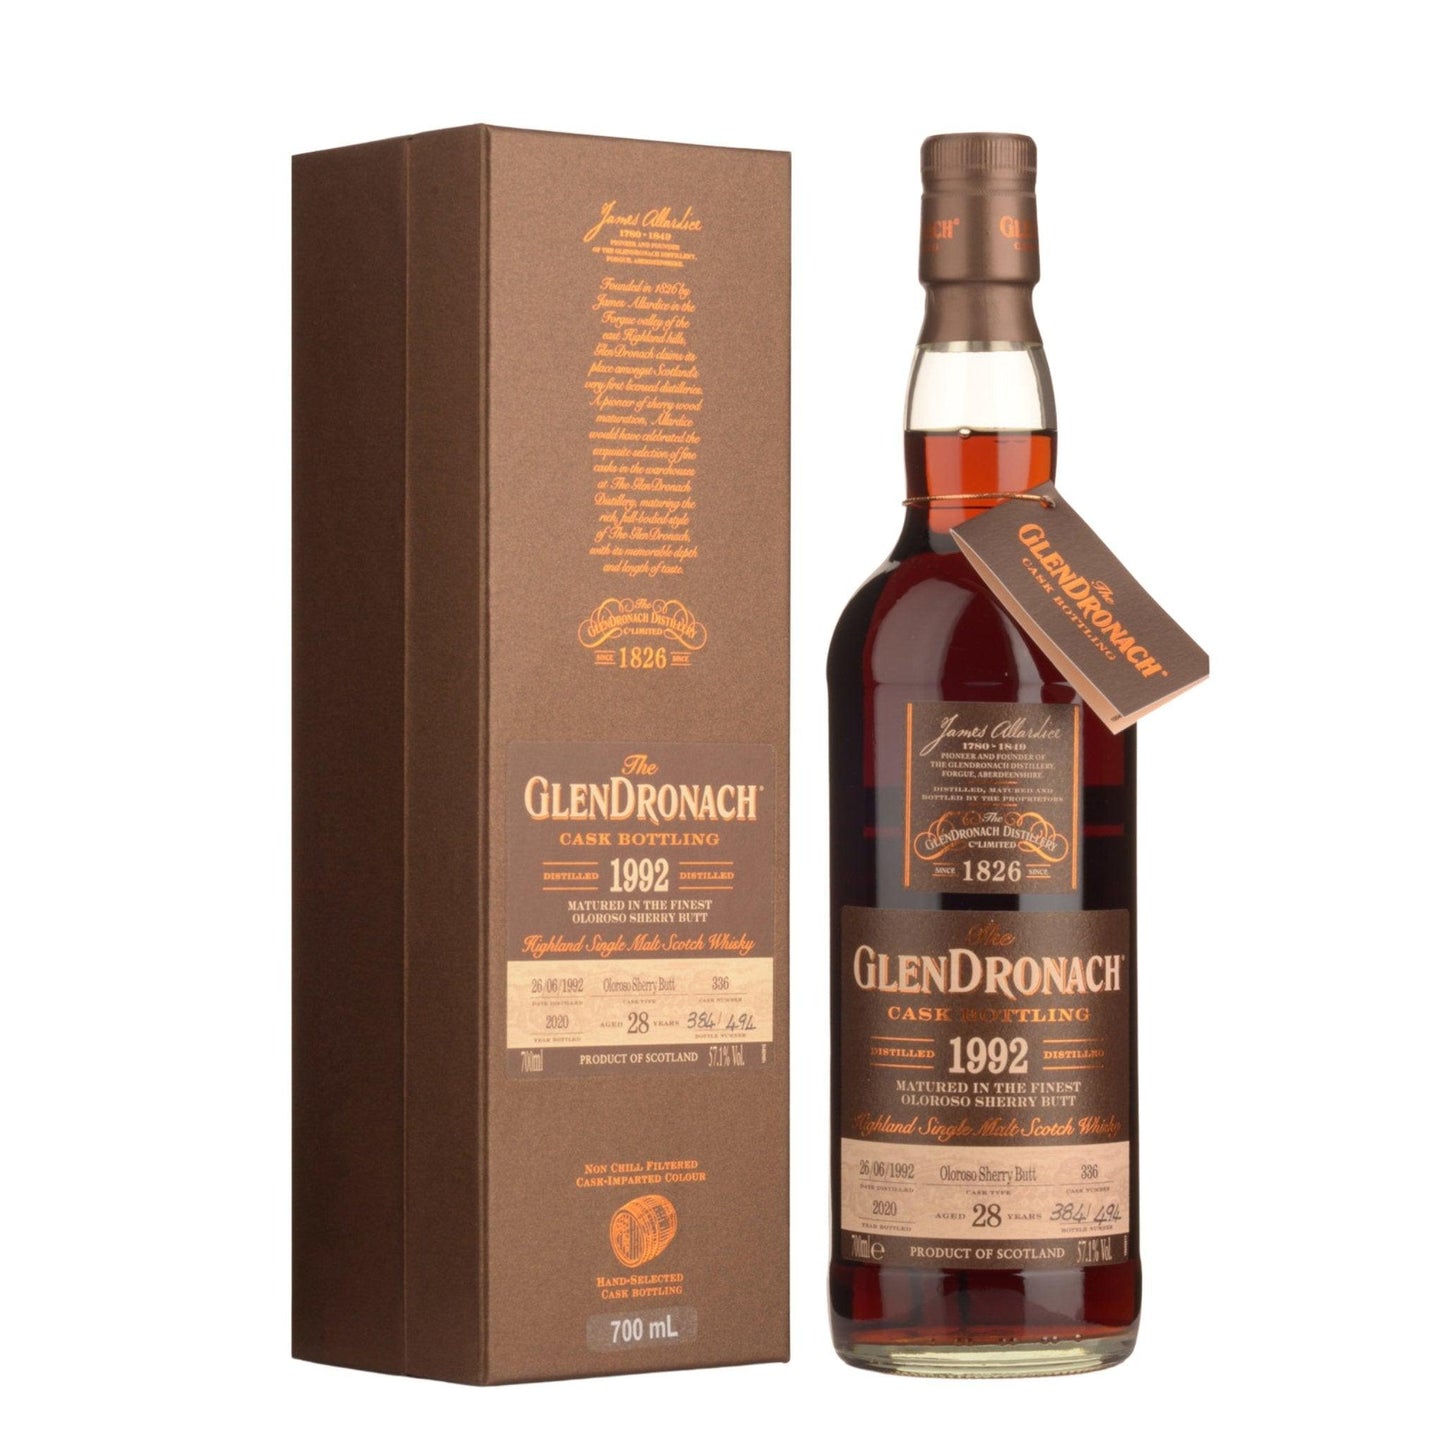 1992 Glendronach Single Cask No.336 Oloroso Sherry Butt Cask Strength 28 Year Old Single Malt Scotch Whisky (700ml) - Booze House